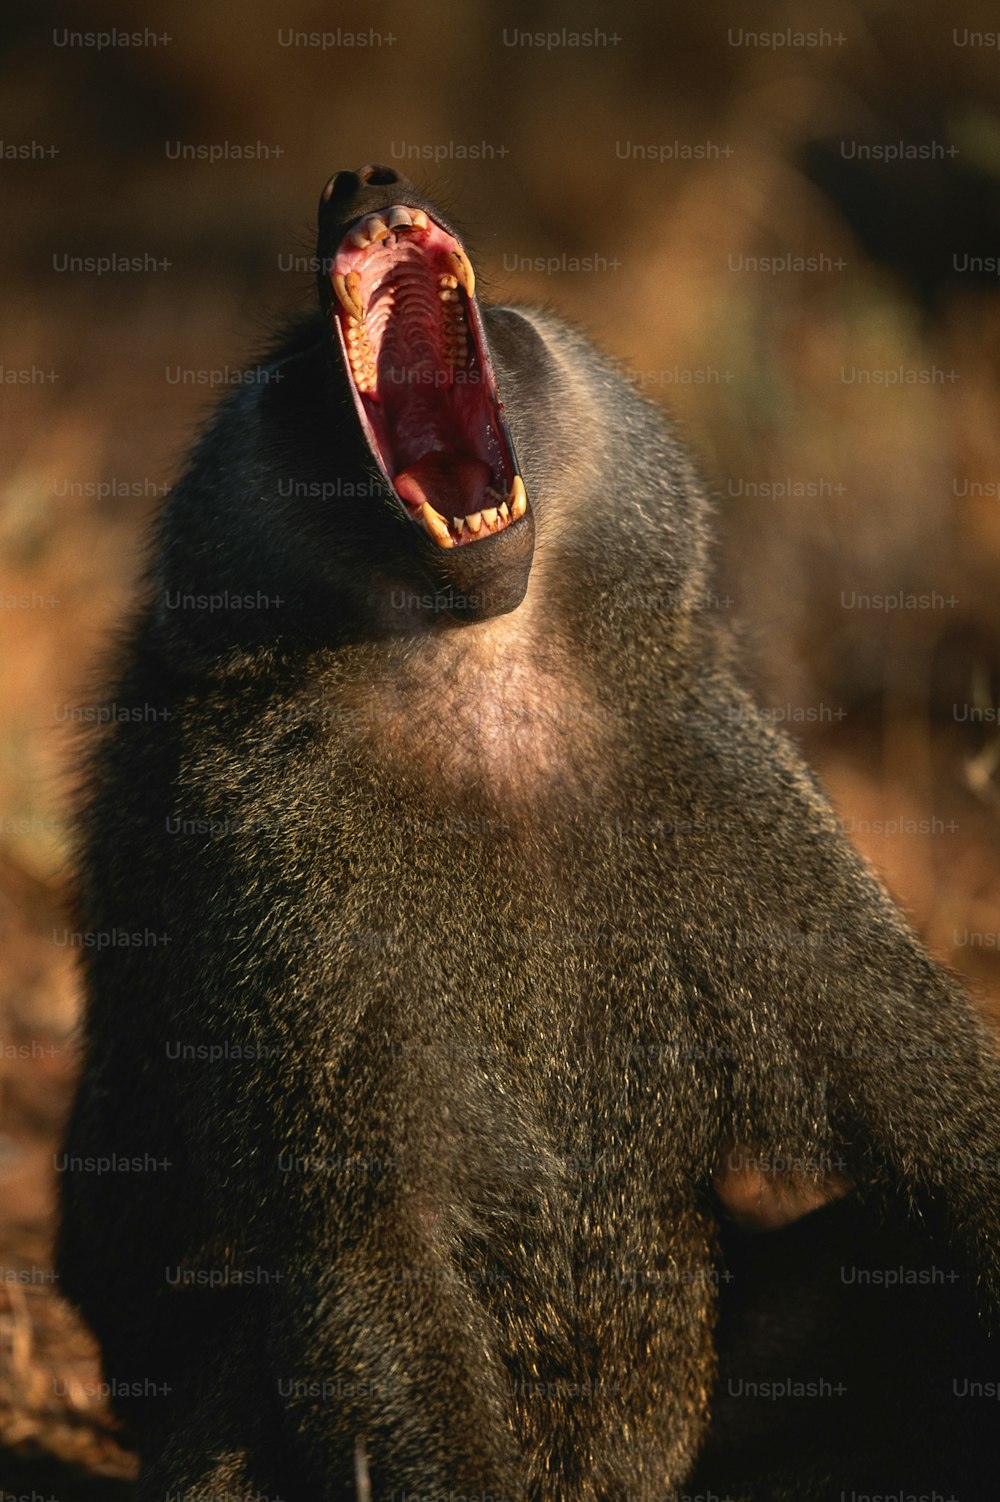 Un babuino con la boca abierta y la boca abierta